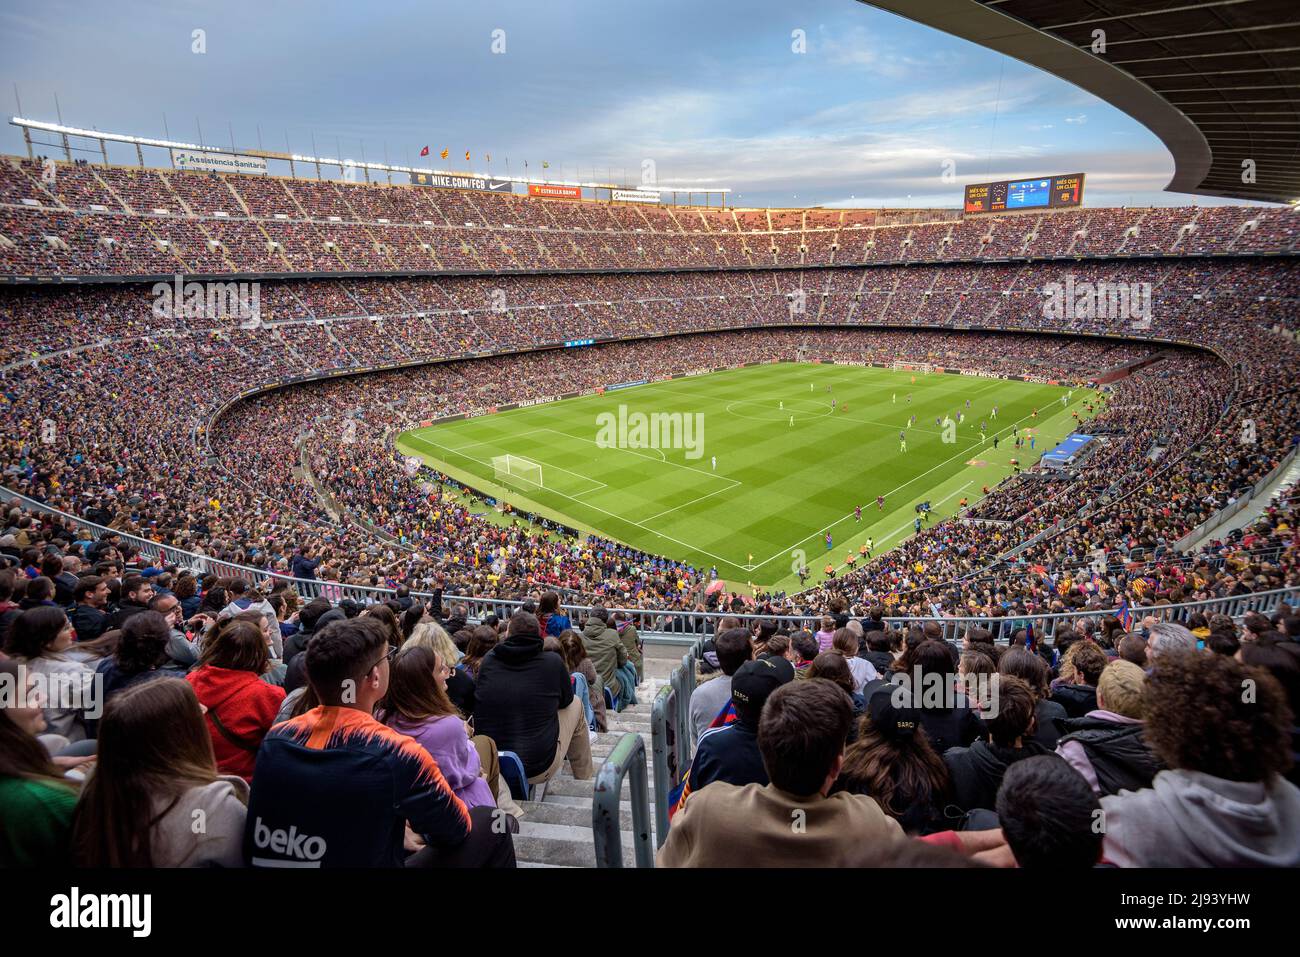 Ambiance festive au stade Camp Nou, vendu avec 91 648 spectateurs, le  record mondial de participation à un match de football féminin, dans la  Ligue des Champions 2022 Photo Stock - Alamy